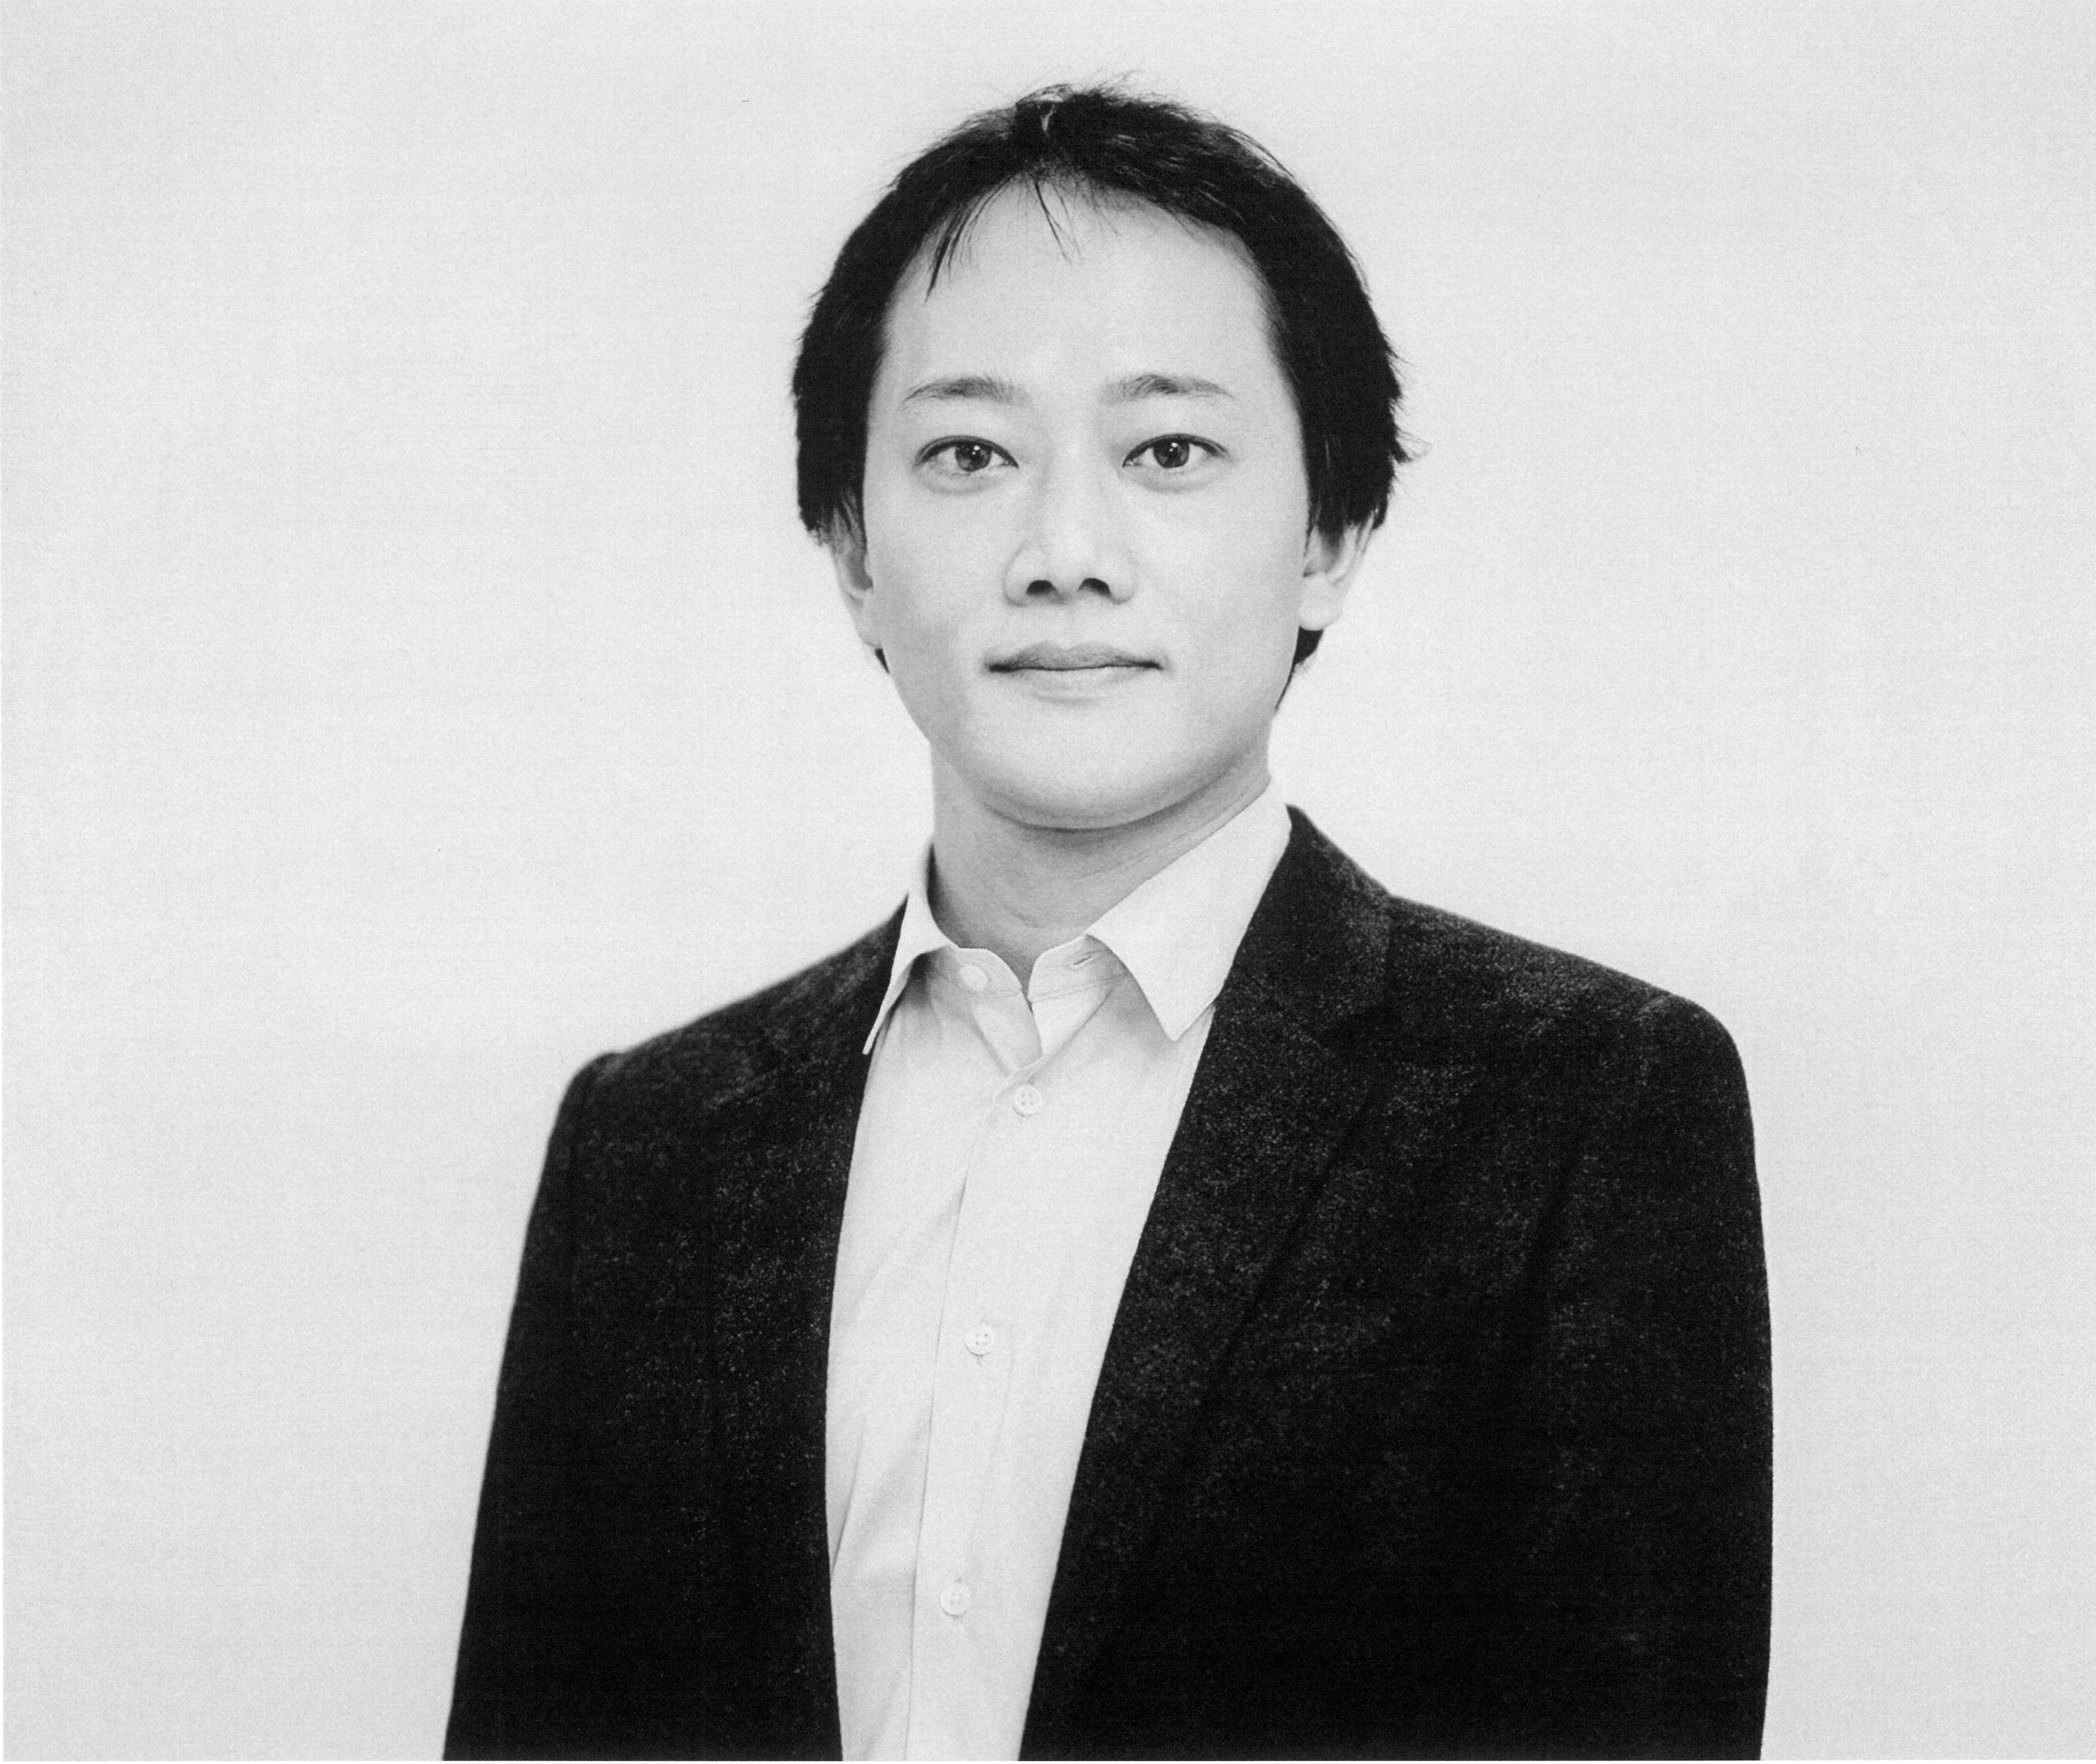 Kohei Toda, managing director